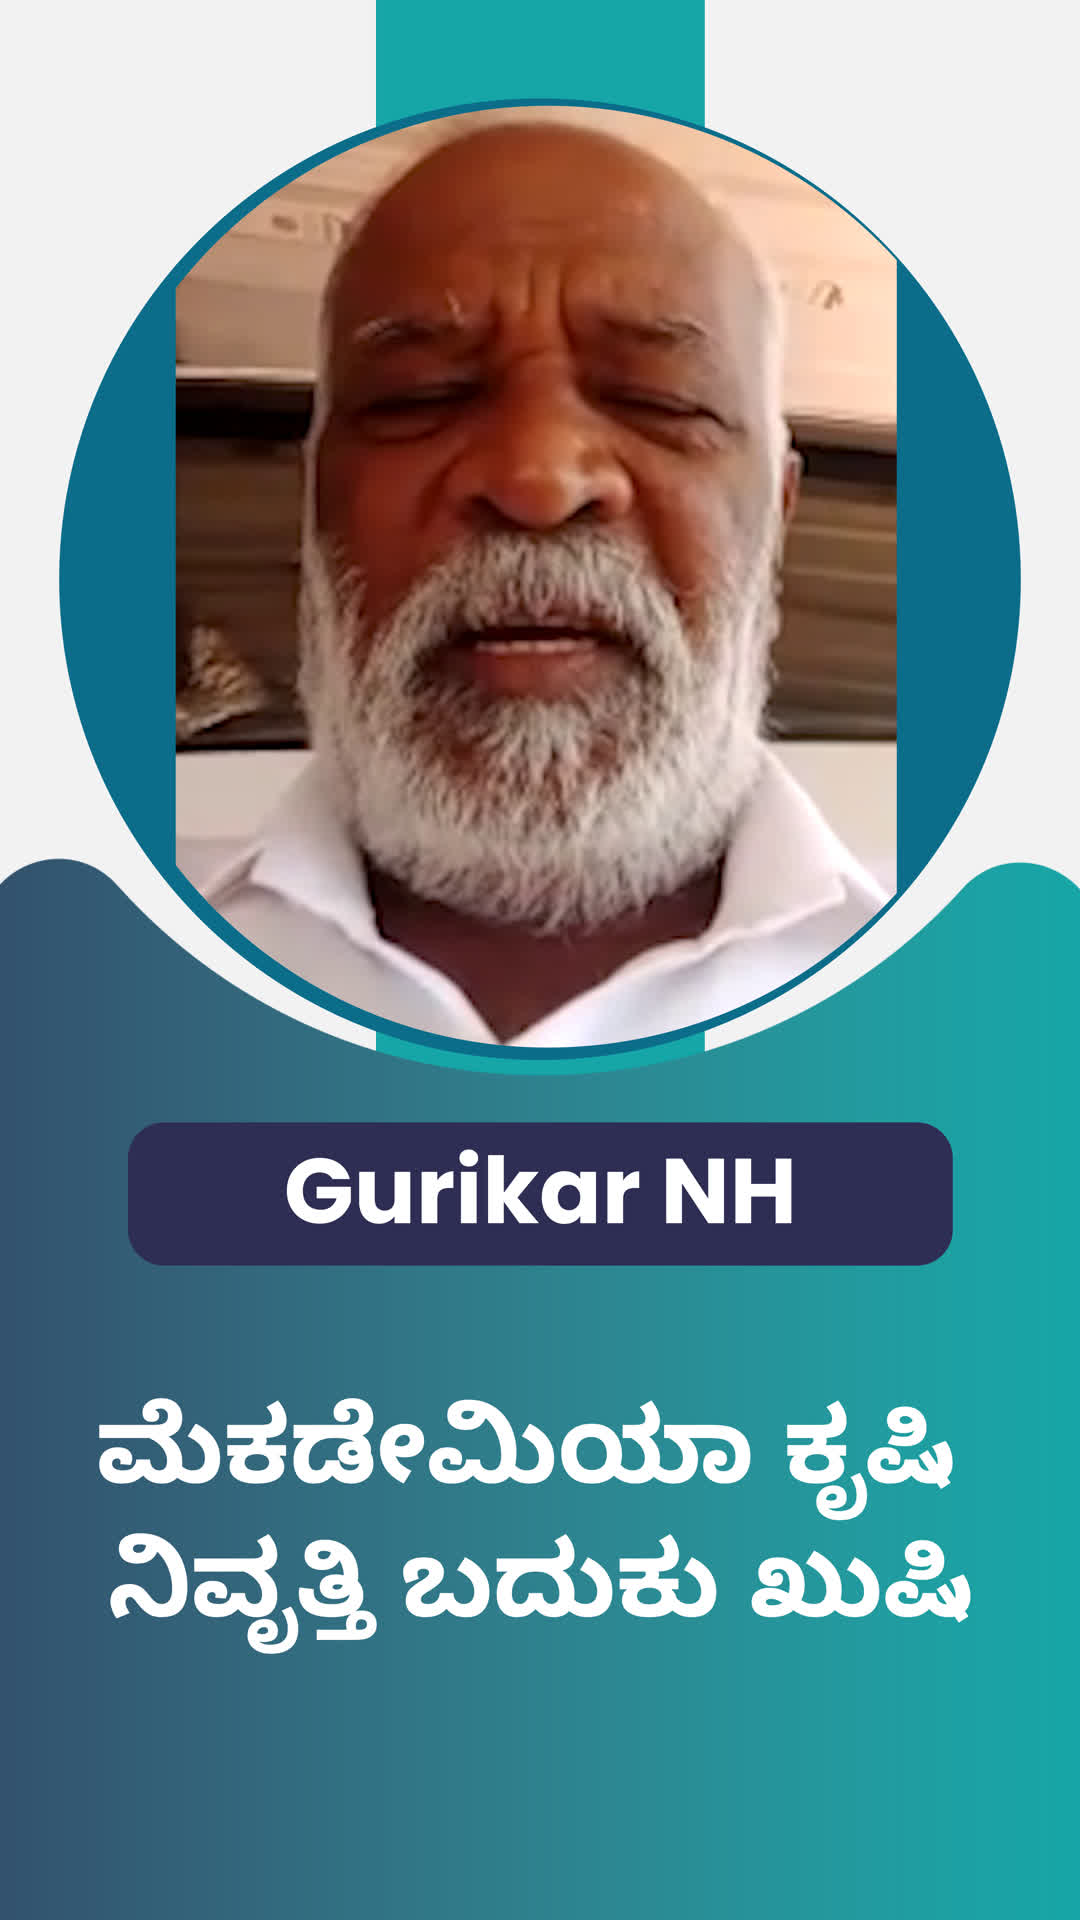 Gurikar's Honest Review of ffreedom app - Kalaburagi ,Karnataka